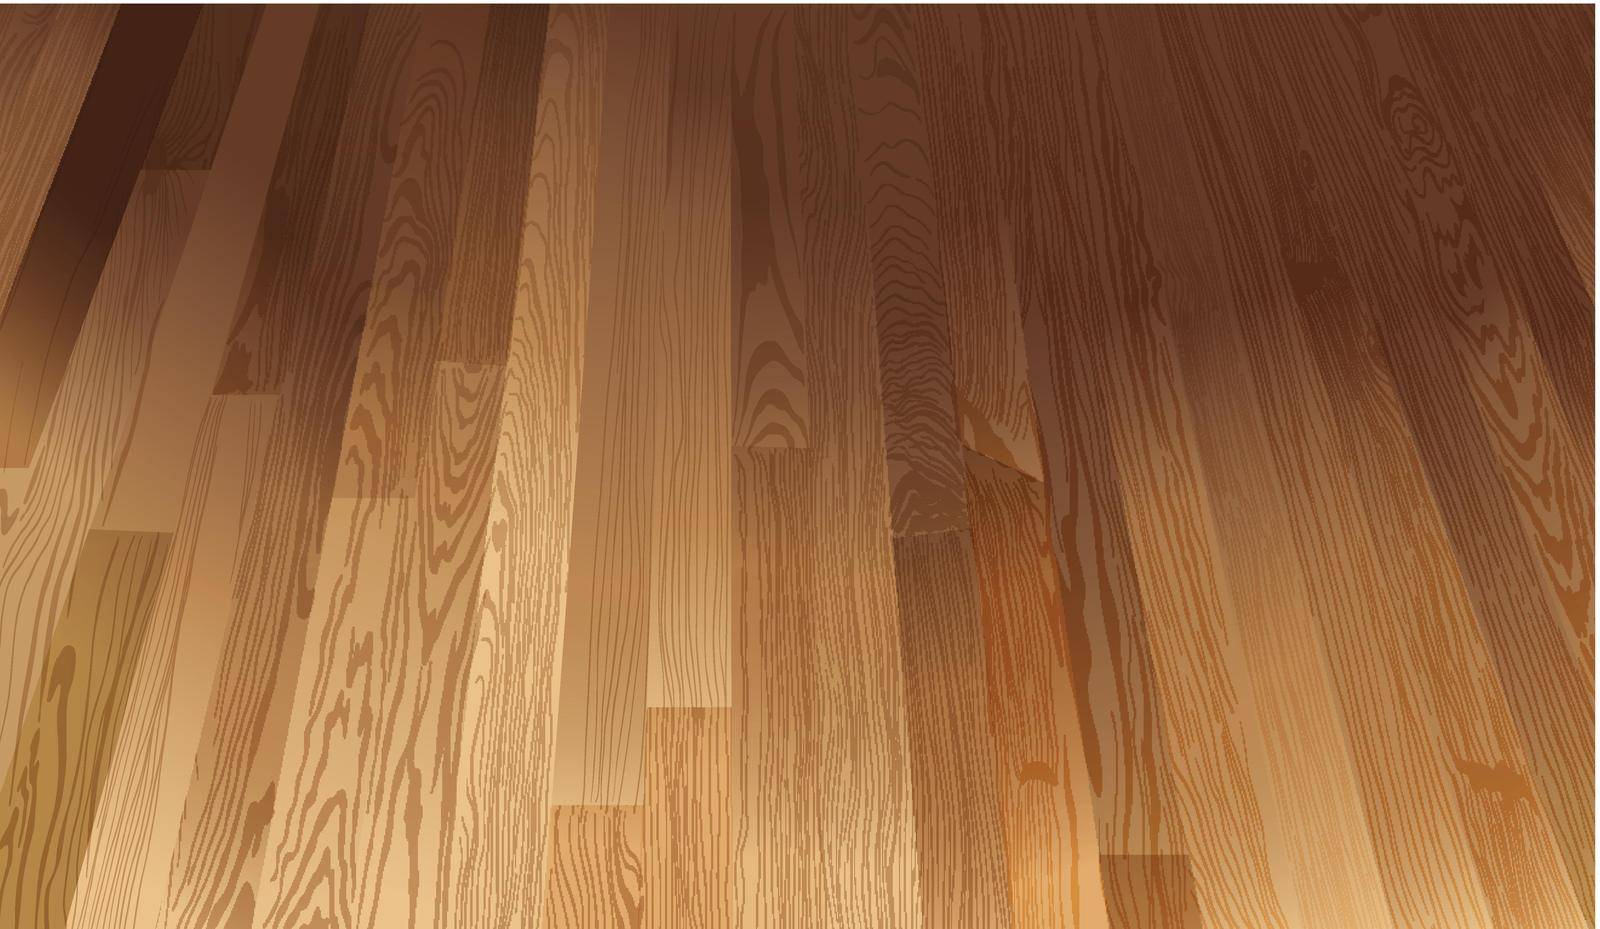 A wooden floor texture